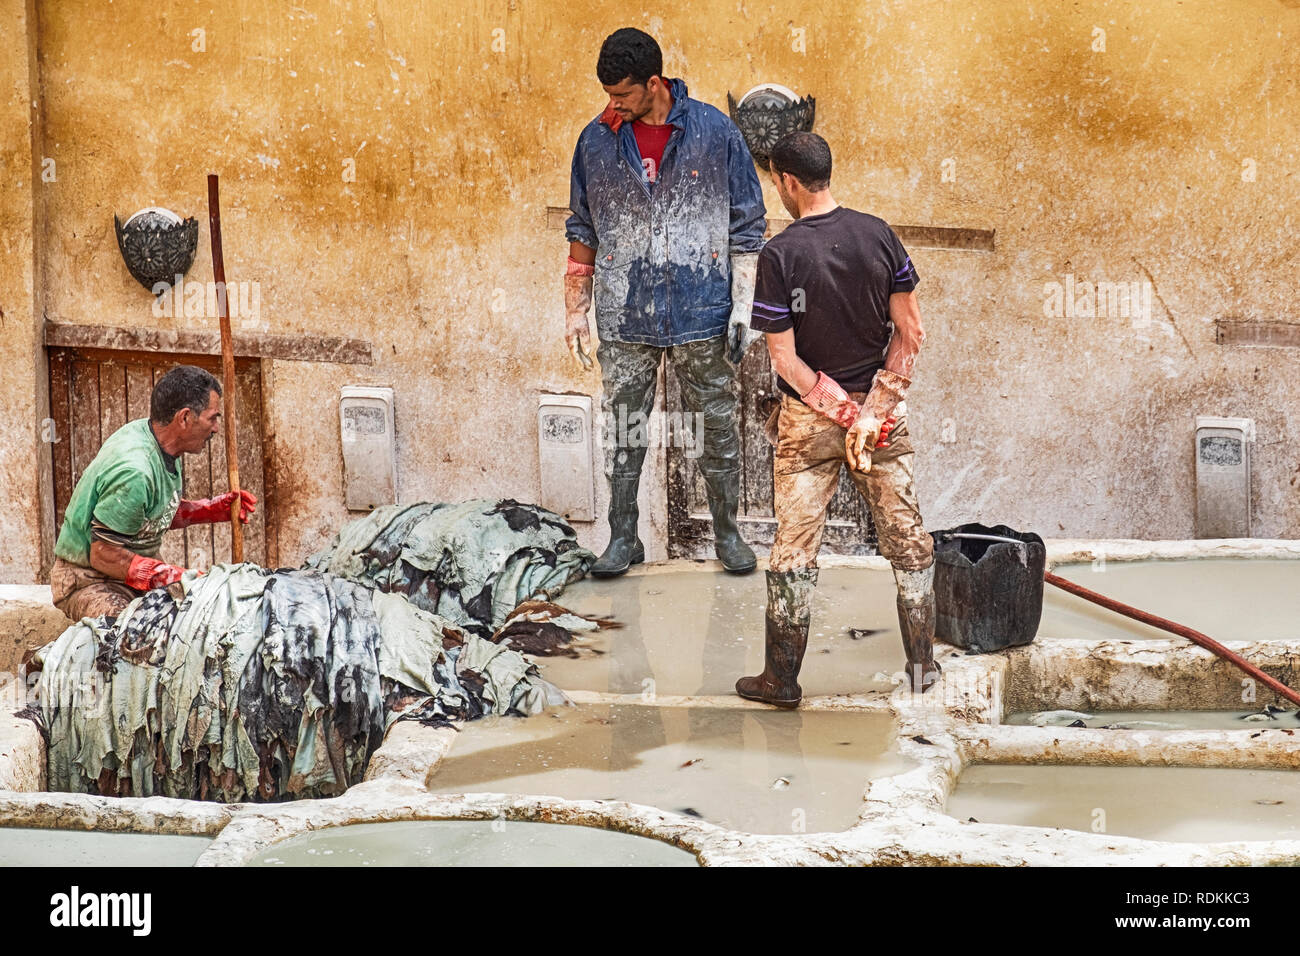 FES, MAROC - 19 octobre 2018 : Trois travailleurs dans la tannerie Chouara à Fes, Maroc faites tremper les peaux dans les fosses de bronzage pour ramollir le leat Banque D'Images